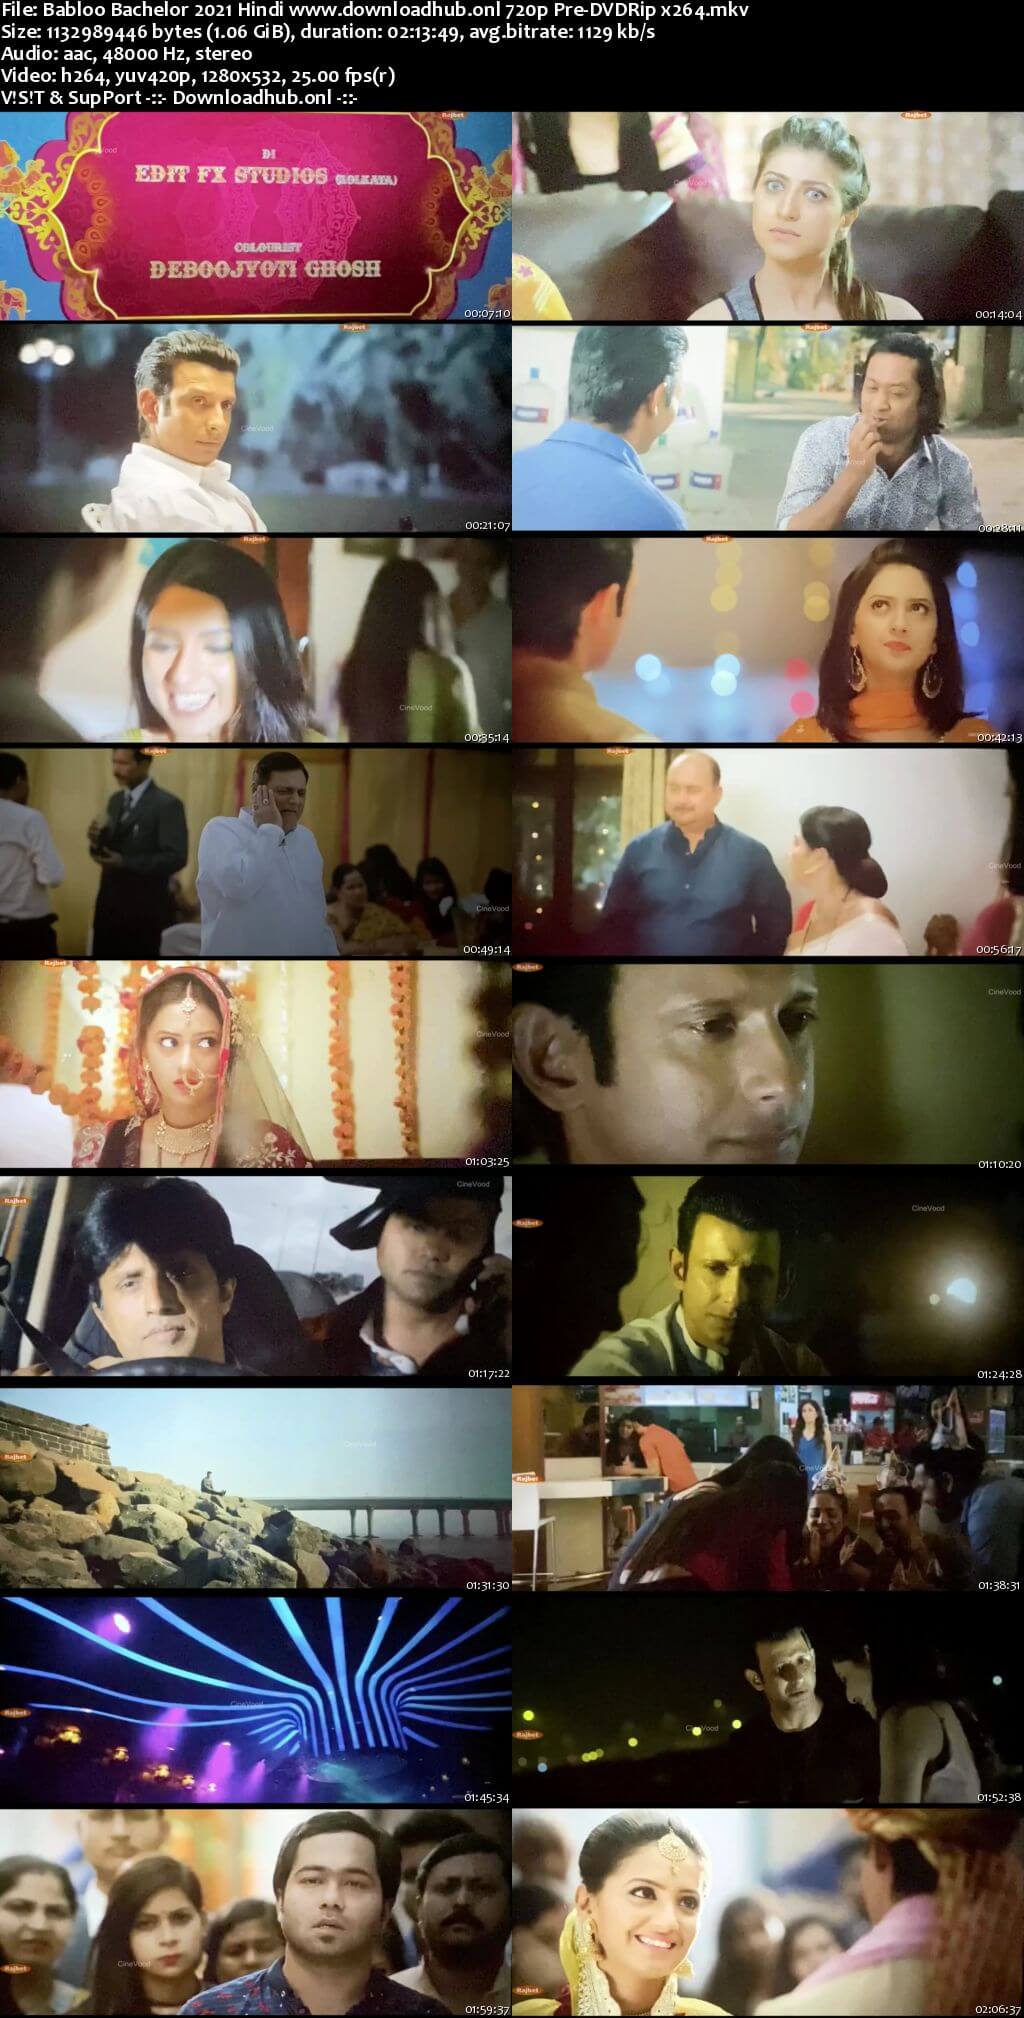 Babloo Bachelor 2021 Hindi 720p 480p Pre-DVDRip x264